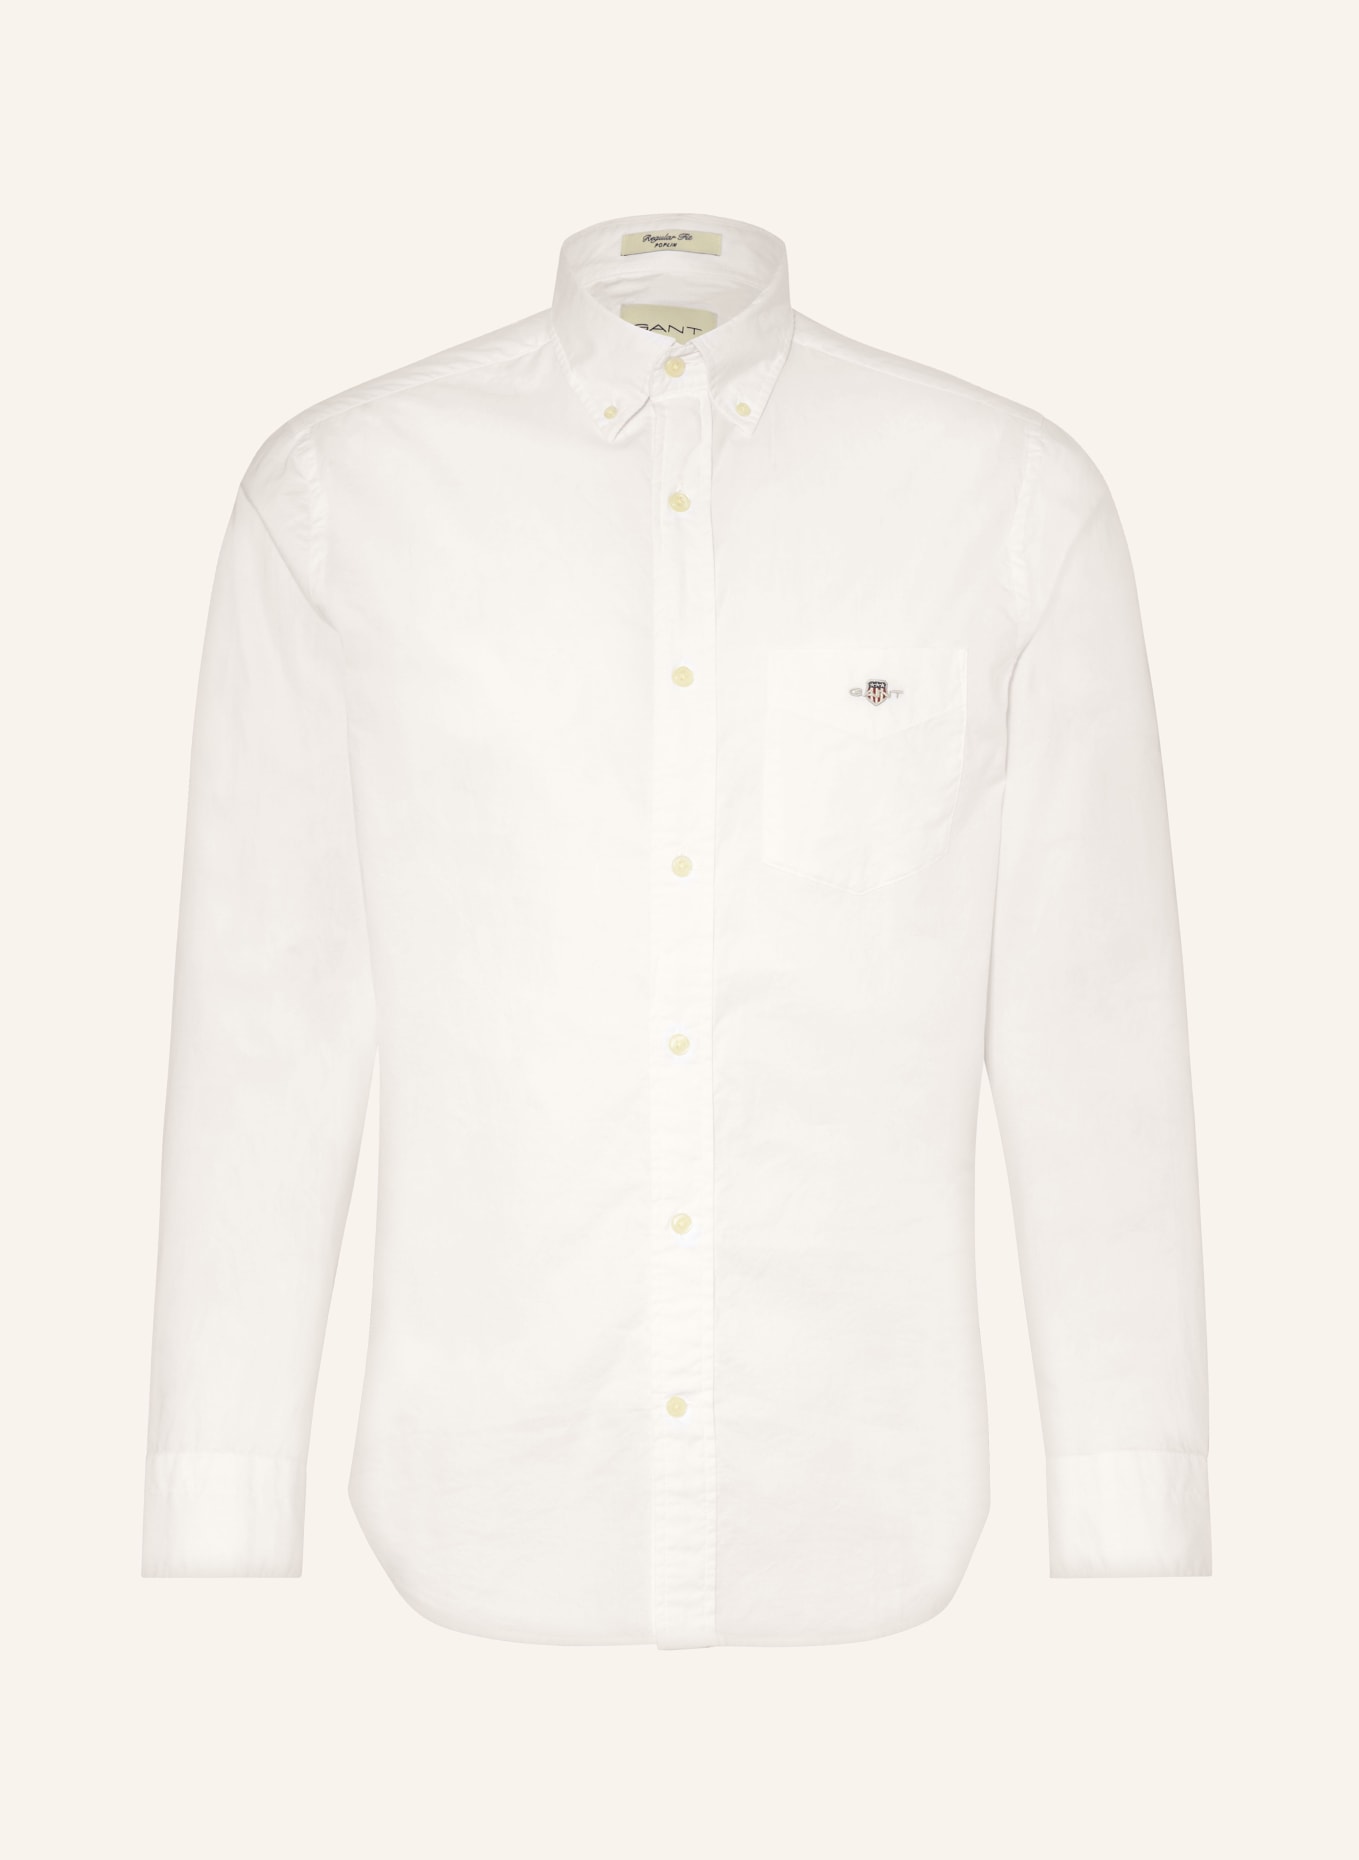 GANT Shirt regular fit, Color: WHITE (Image 1)